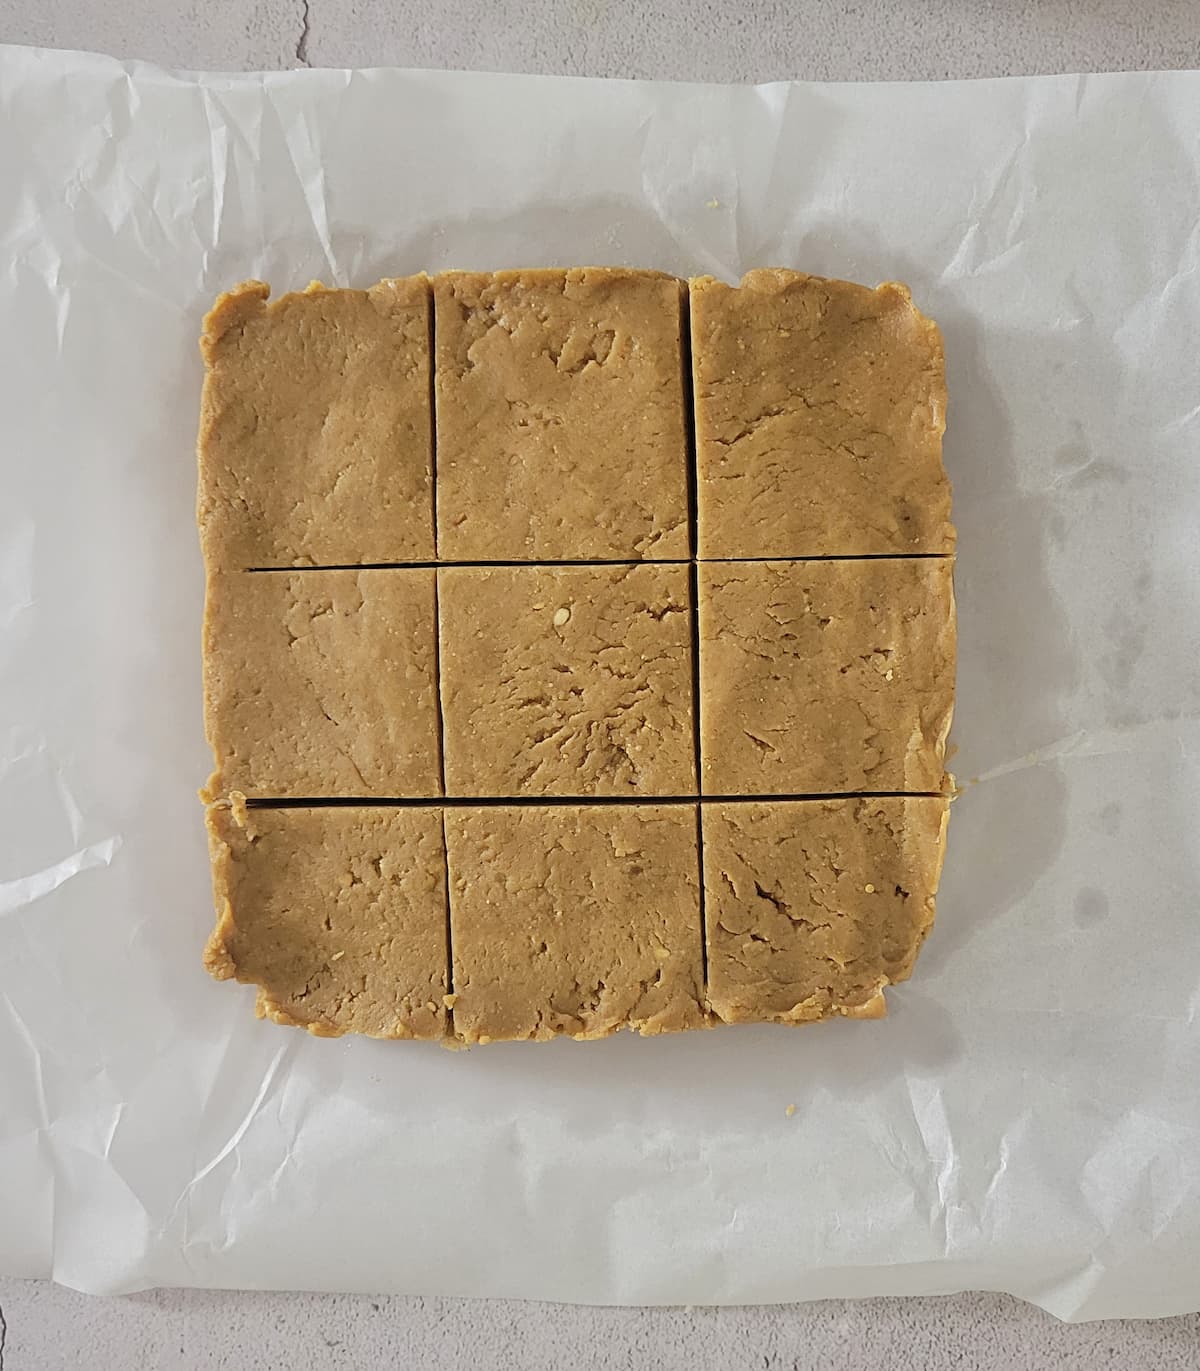 peanut butter fudge cut into squares on a piece of parchment paper